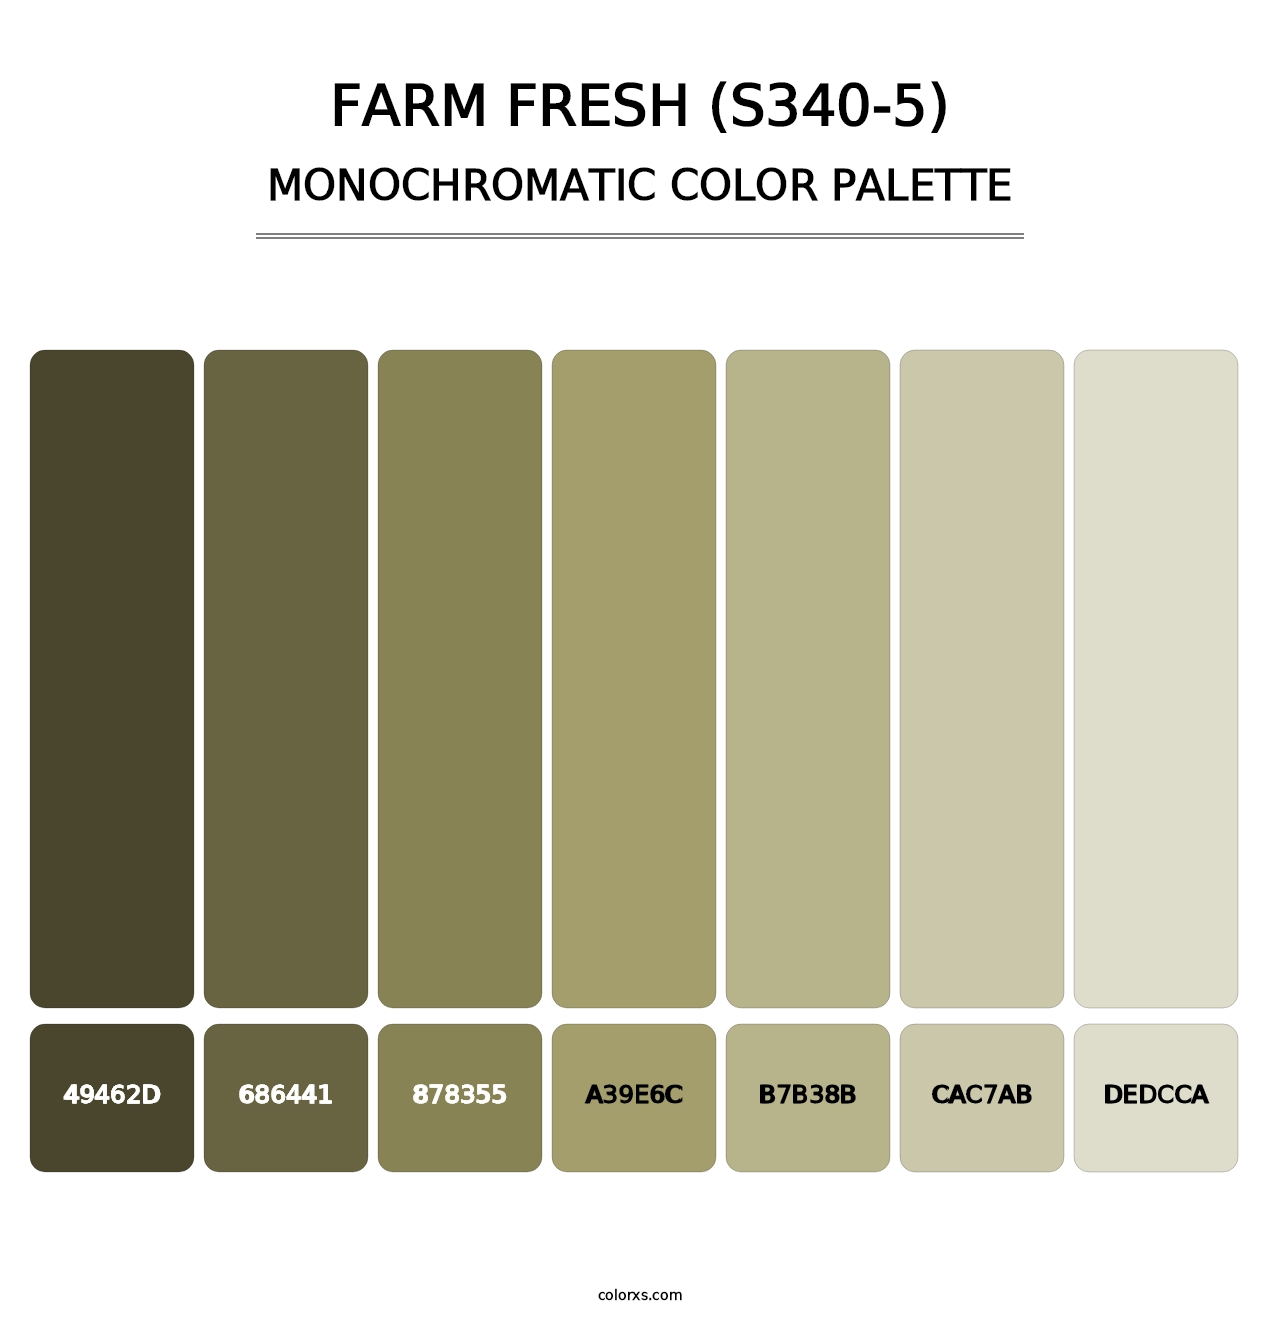 Farm Fresh (S340-5) - Monochromatic Color Palette